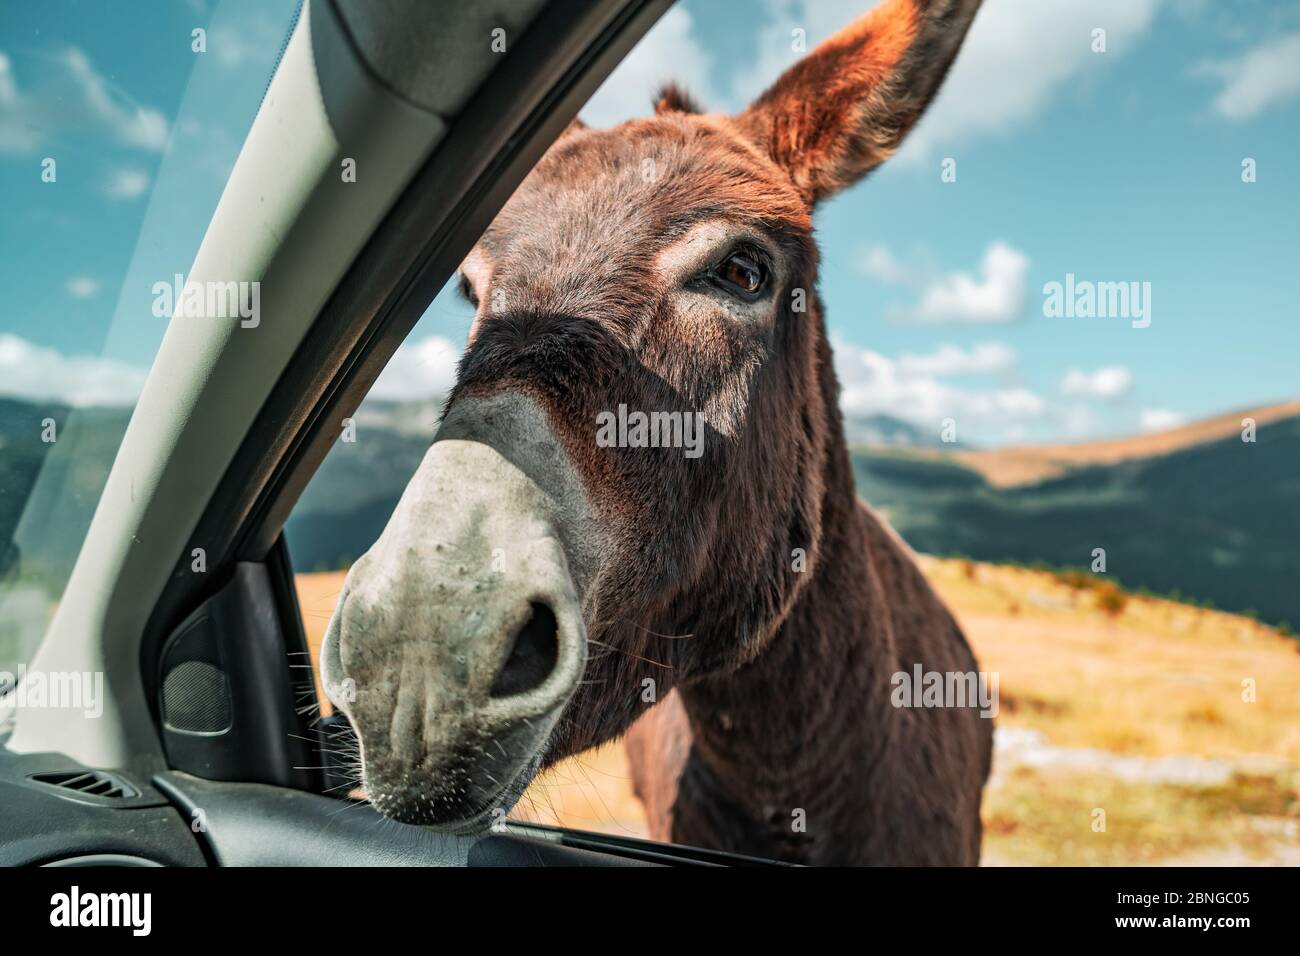 Nahaufnahme eines braunen Esels, der vom Passagier gefangen genommen wurde Sitz eines Autos Stockfoto